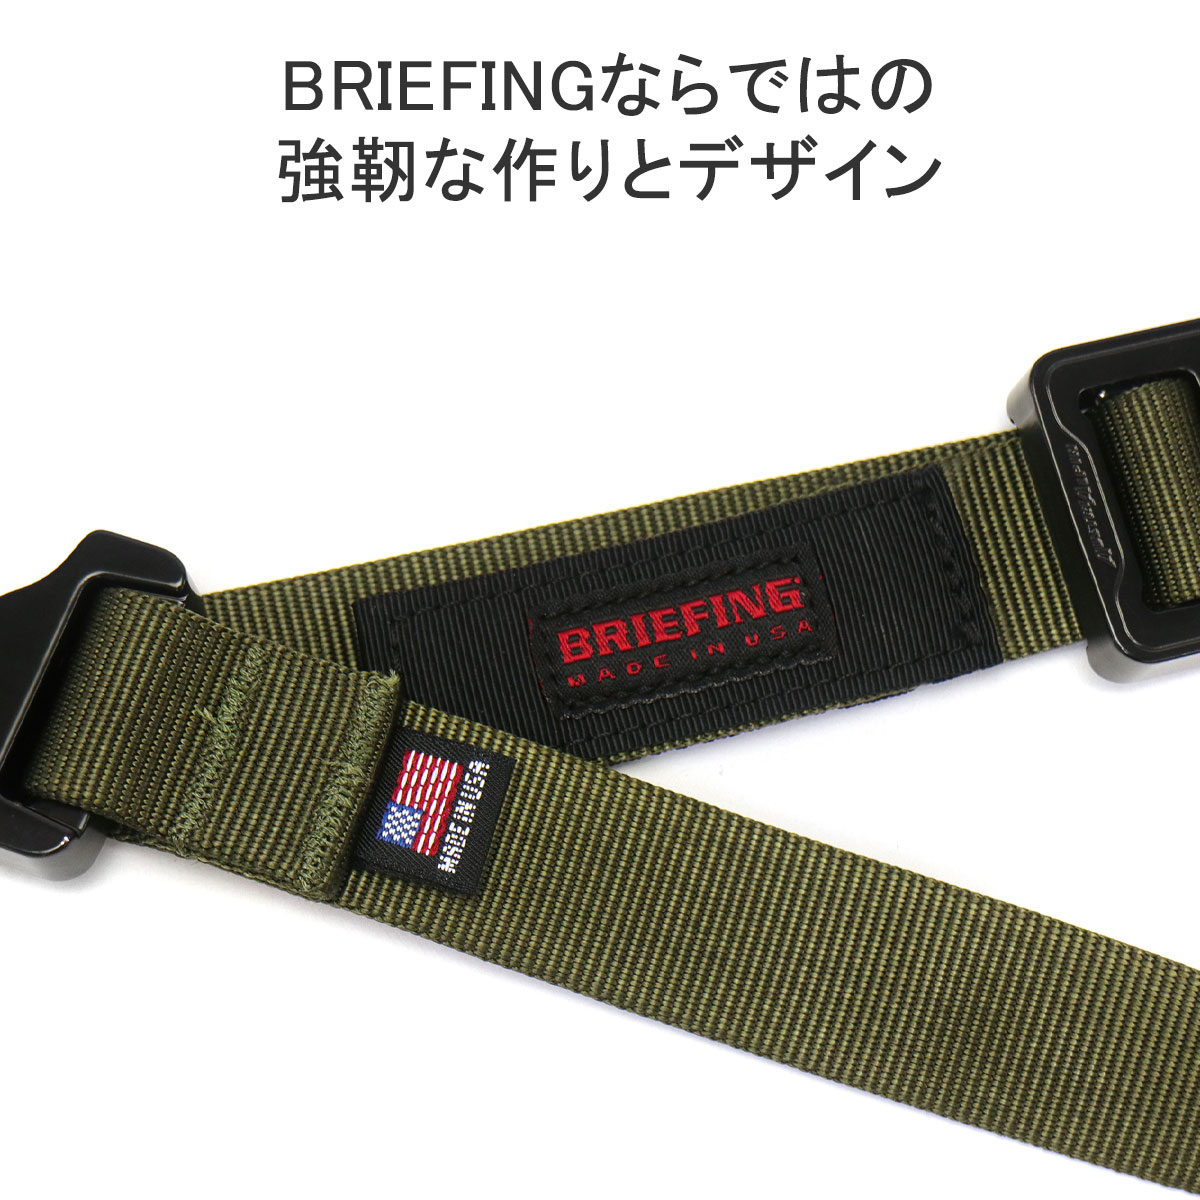 最大36%★6/11限定 日本正規品 ブリーフィング ベルト BRIEFING COBRA buckle belt MADE IN USA  COLLECTION ガチャベルト 軽量 ナイロン メンズ BRA221G04